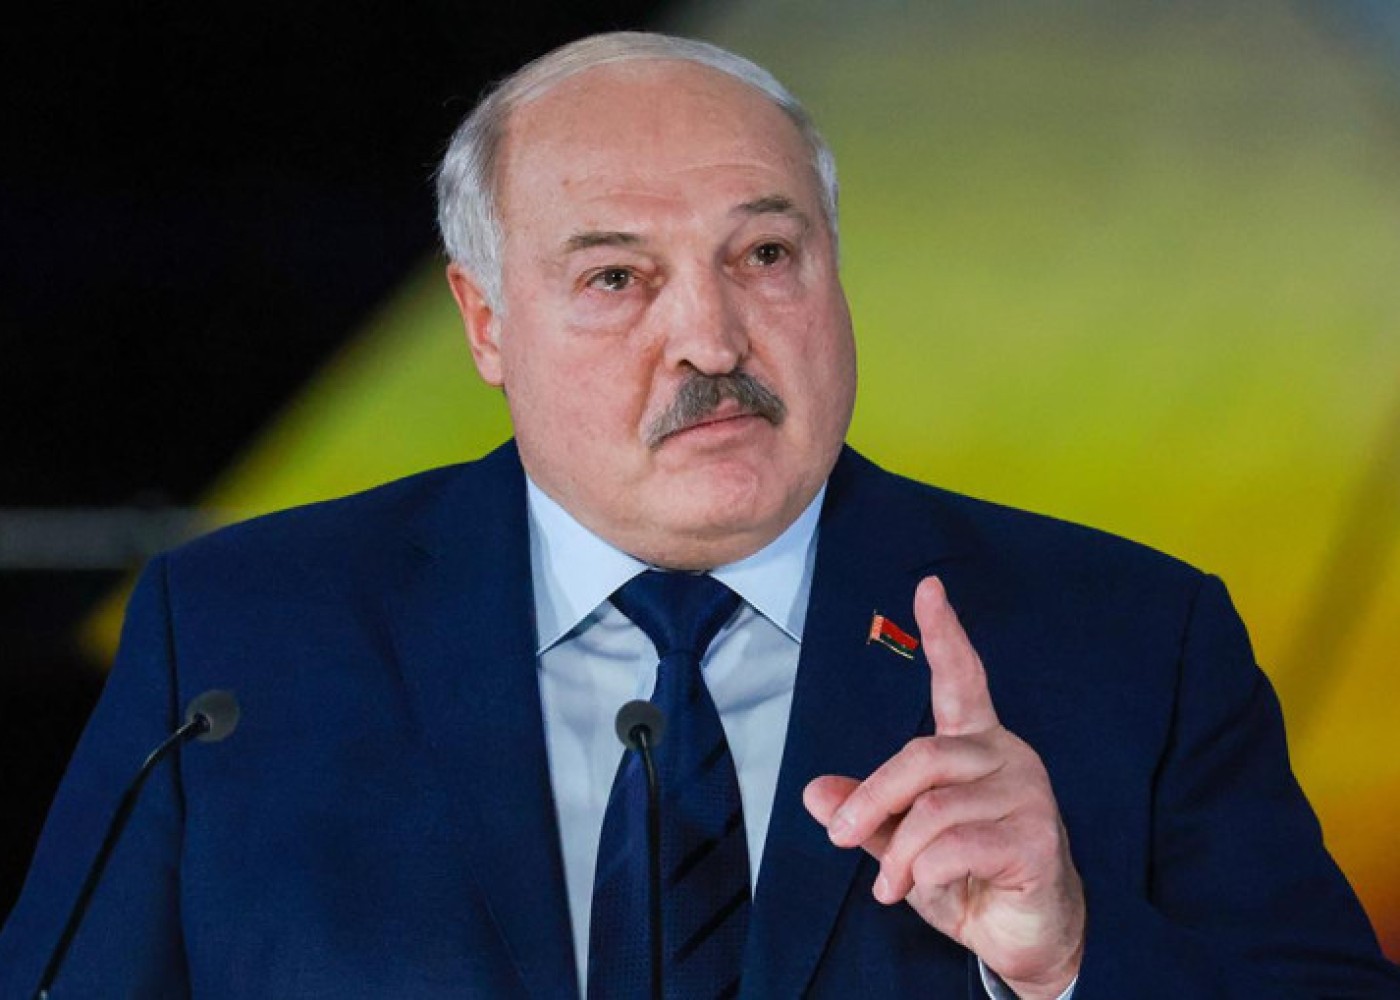 "Ölkə müharibəyə hazır olmalıdır"- Lukaşenko